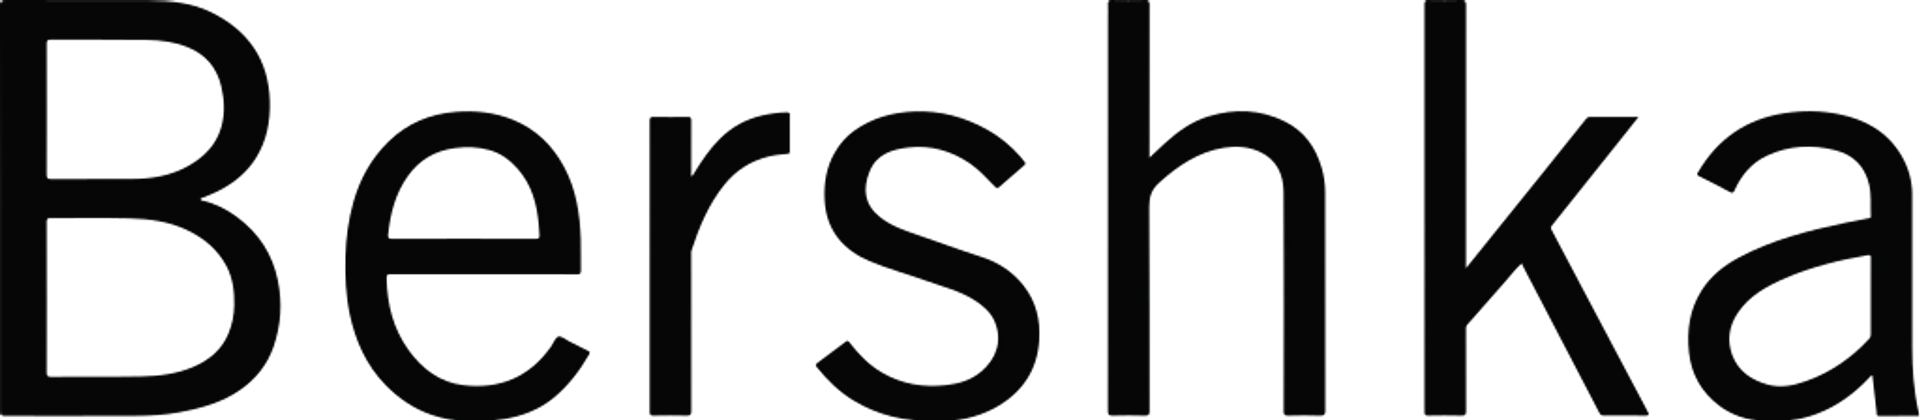 BERSHKA logo die aktuell Flugblatt